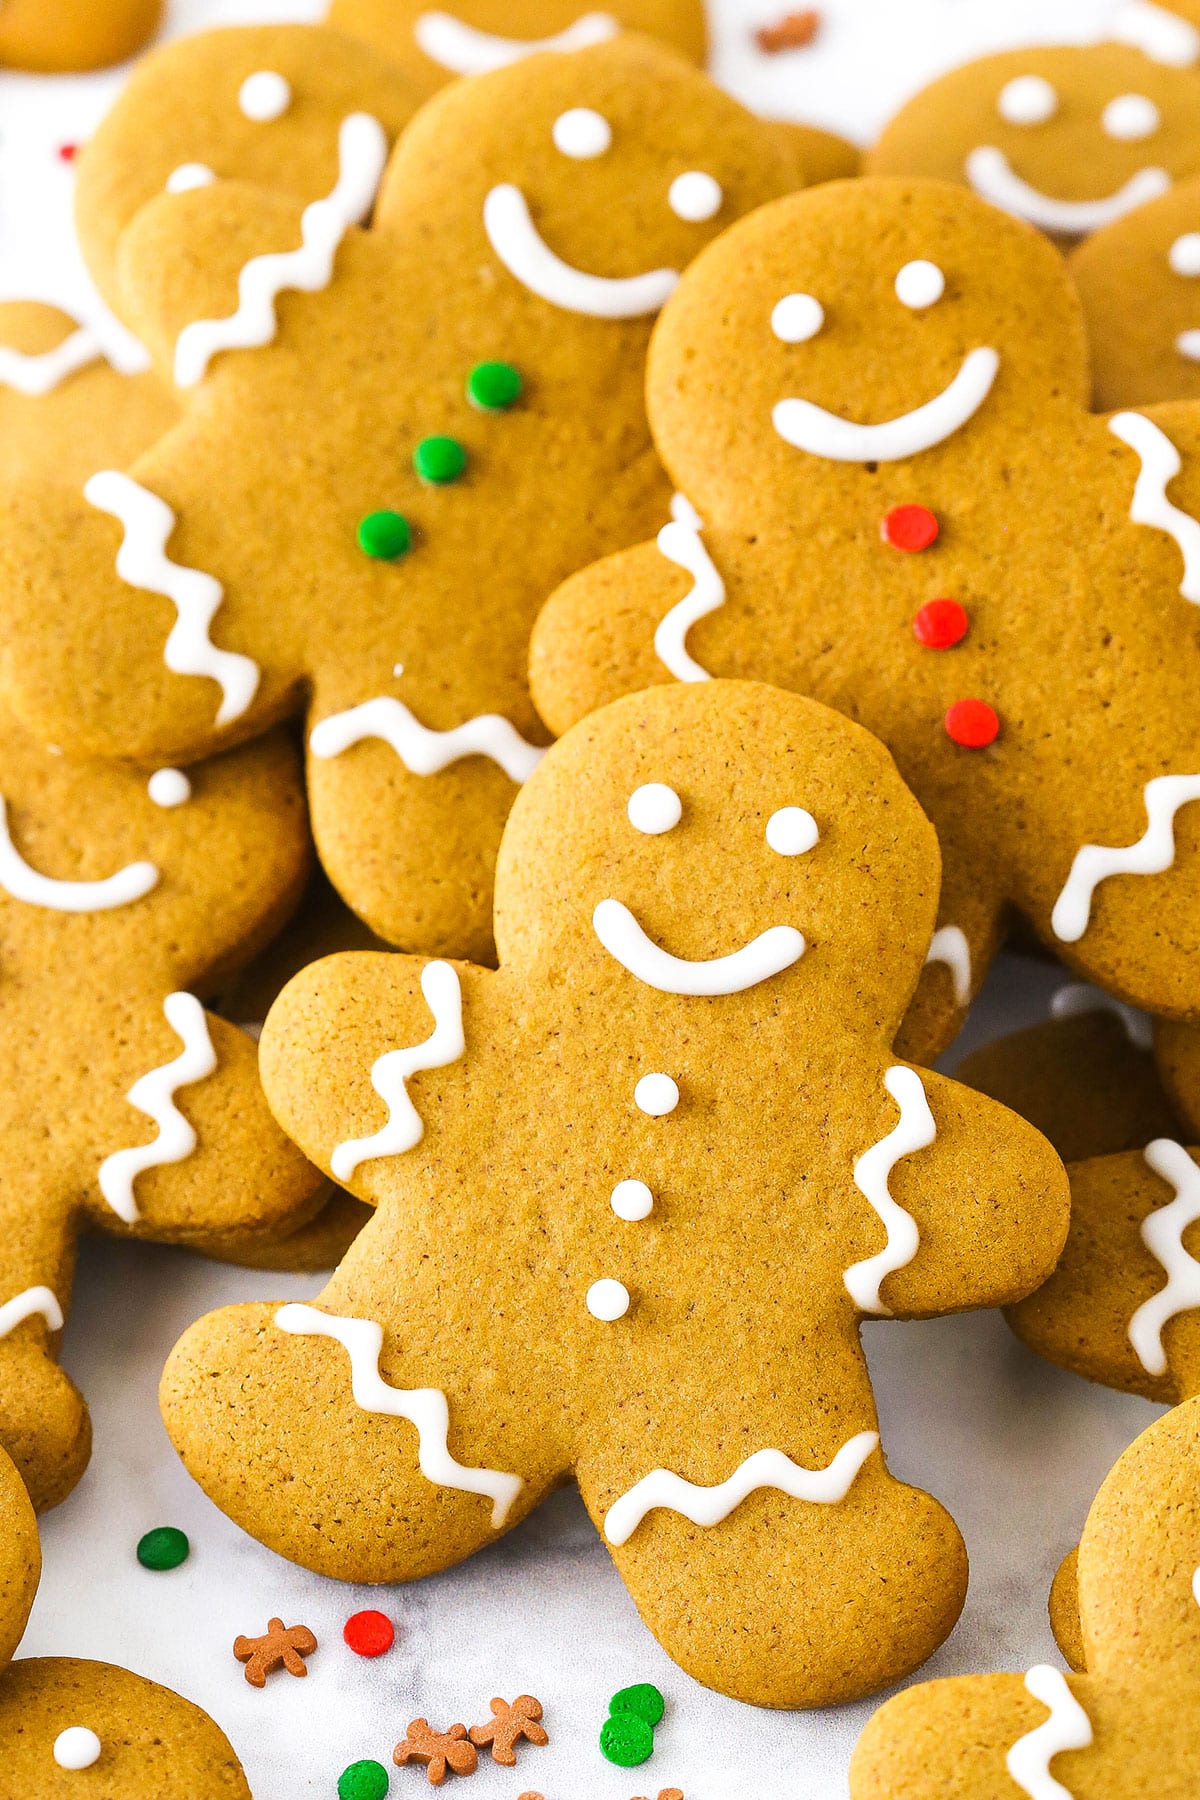 https://www.lifeloveandsugar.com/wp-content/uploads/2023/03/Gingerbread-Cookies6E.jpg